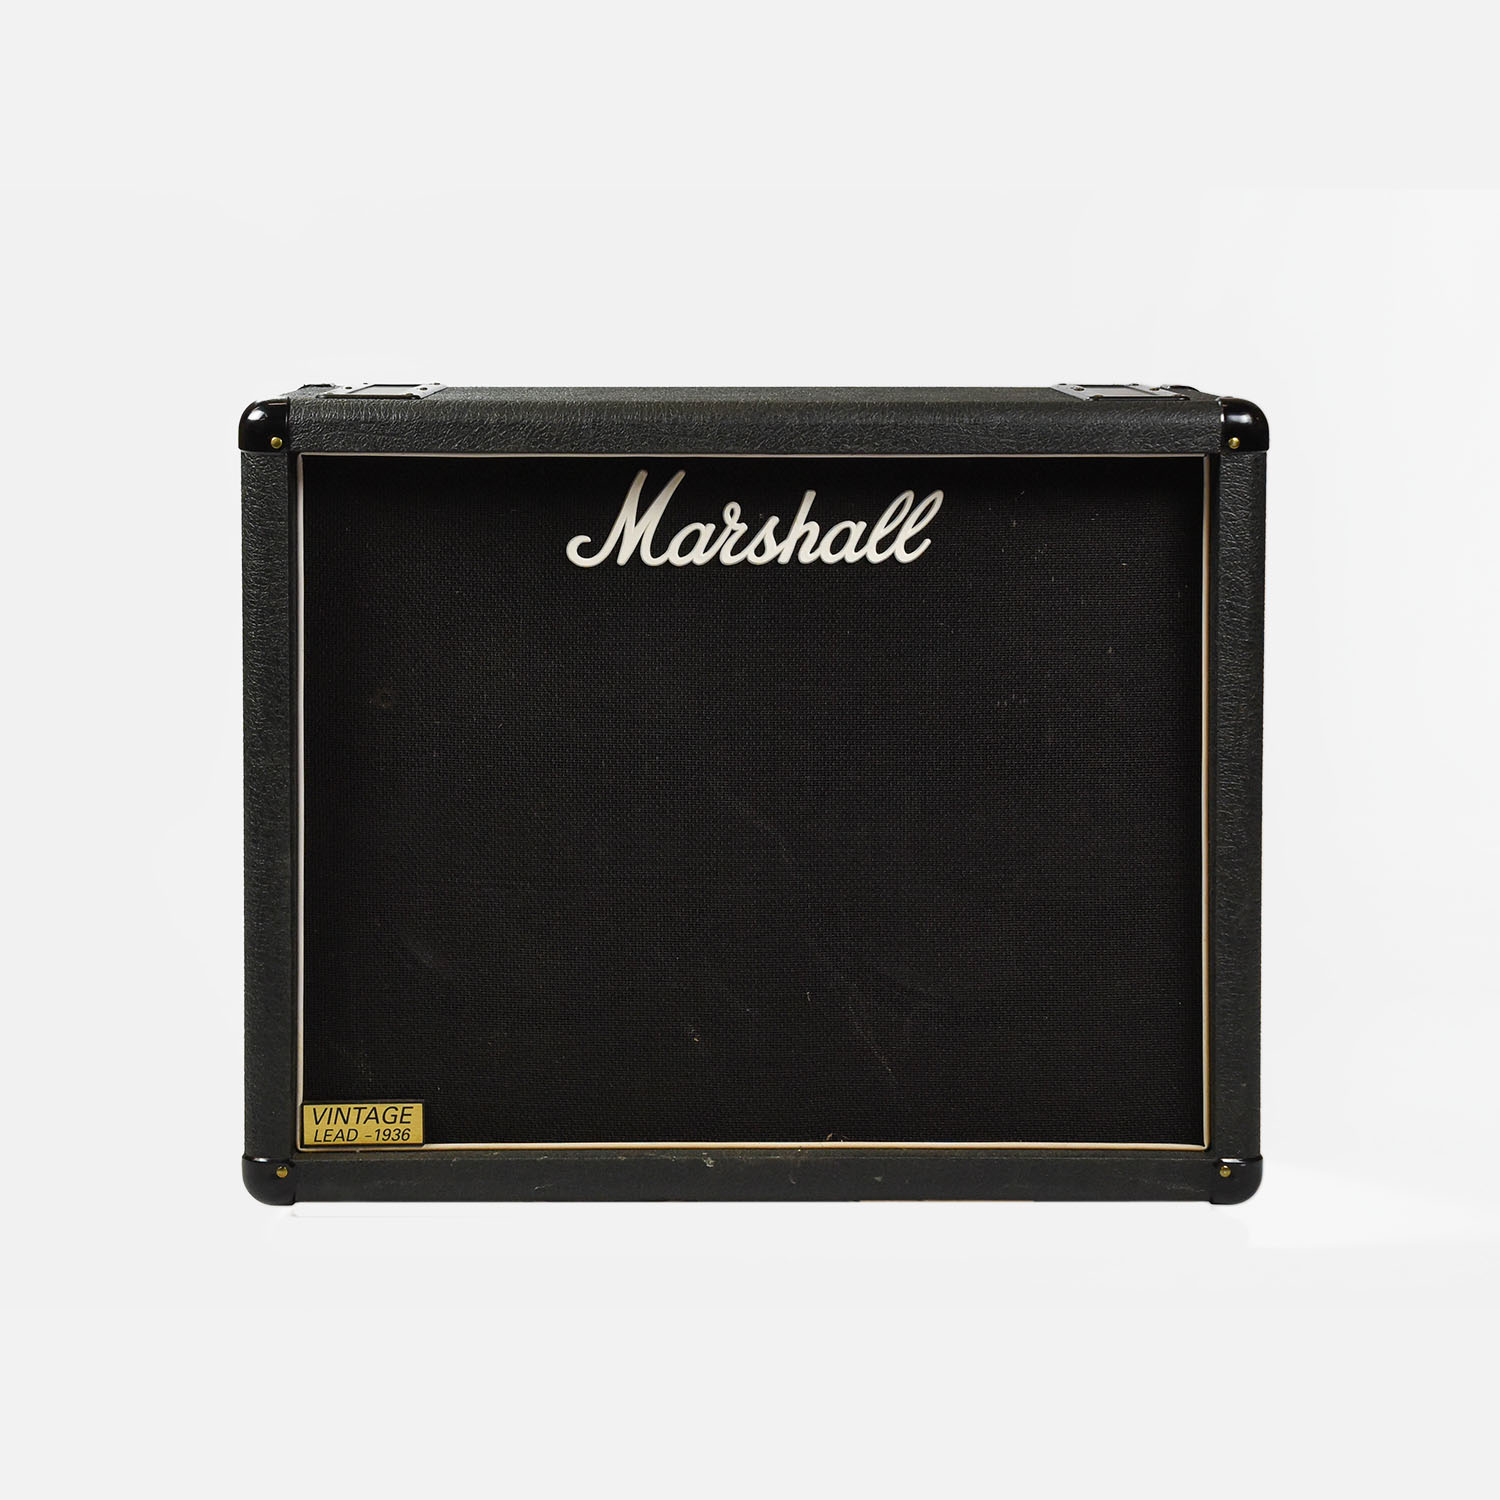 Marshall Vintage Lead 1936 2x12 Speaker Cabinet